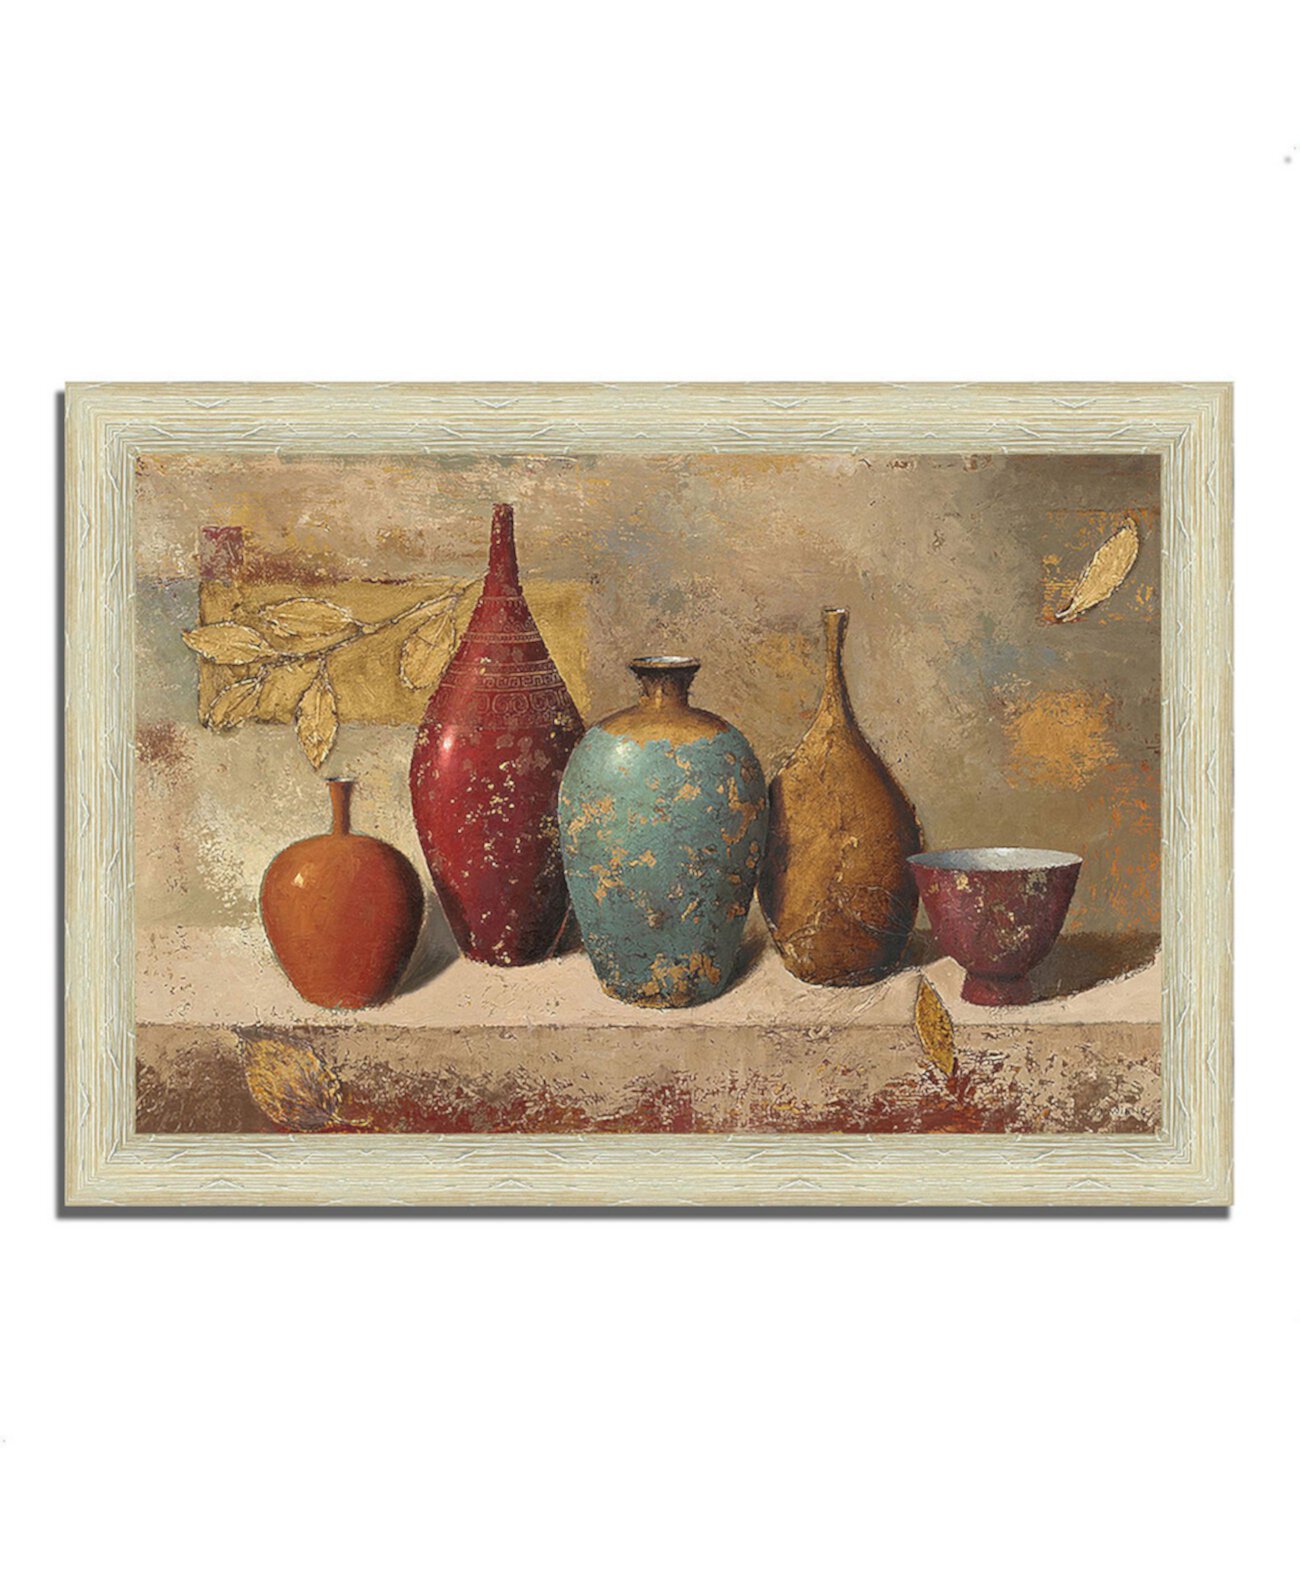 Листья и сосуды. Картина Джеймса Винса в рамке, 36 "x 26" Tangletown Fine Art